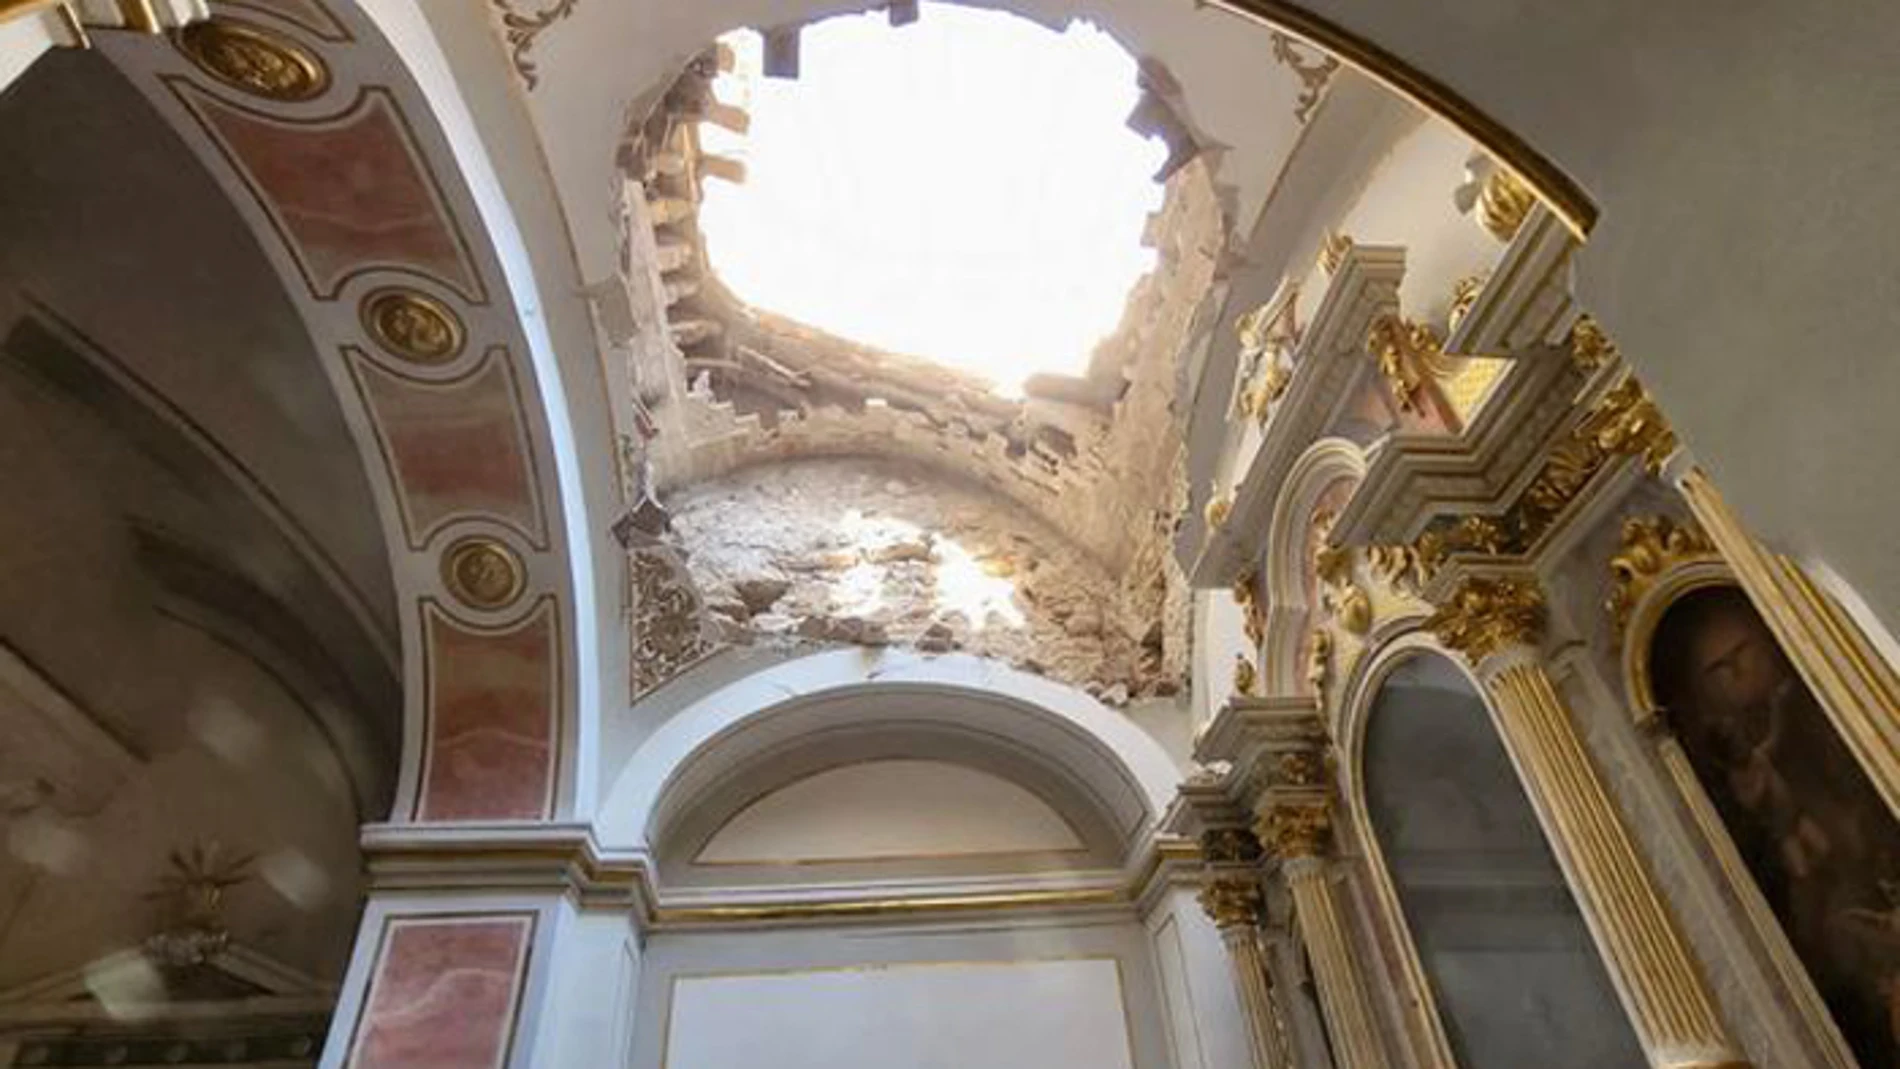 Se derrumba parte de la cúpula de la iglesia de Sollana, sin daños personales